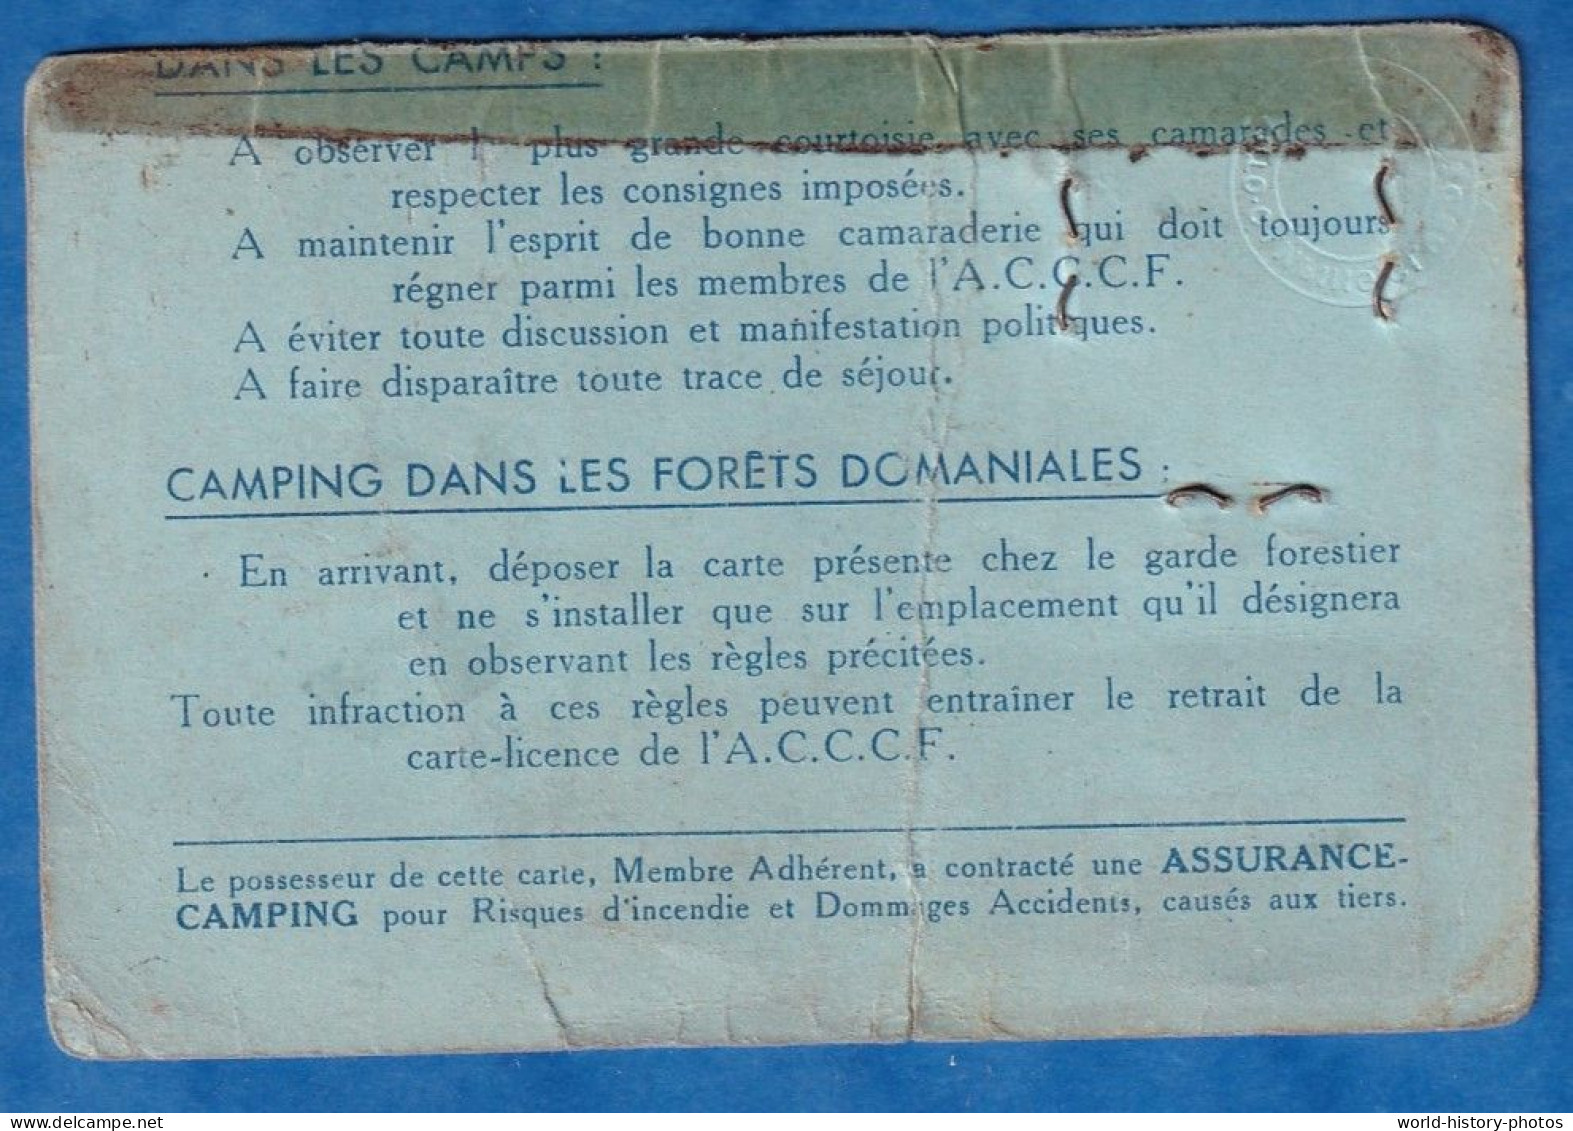 Carte Ancienne De Membre " Provisoire " - Auto Camping Et Caraving Club De France - Alfred BLANCHARD à Compiègne - Mitgliedskarten